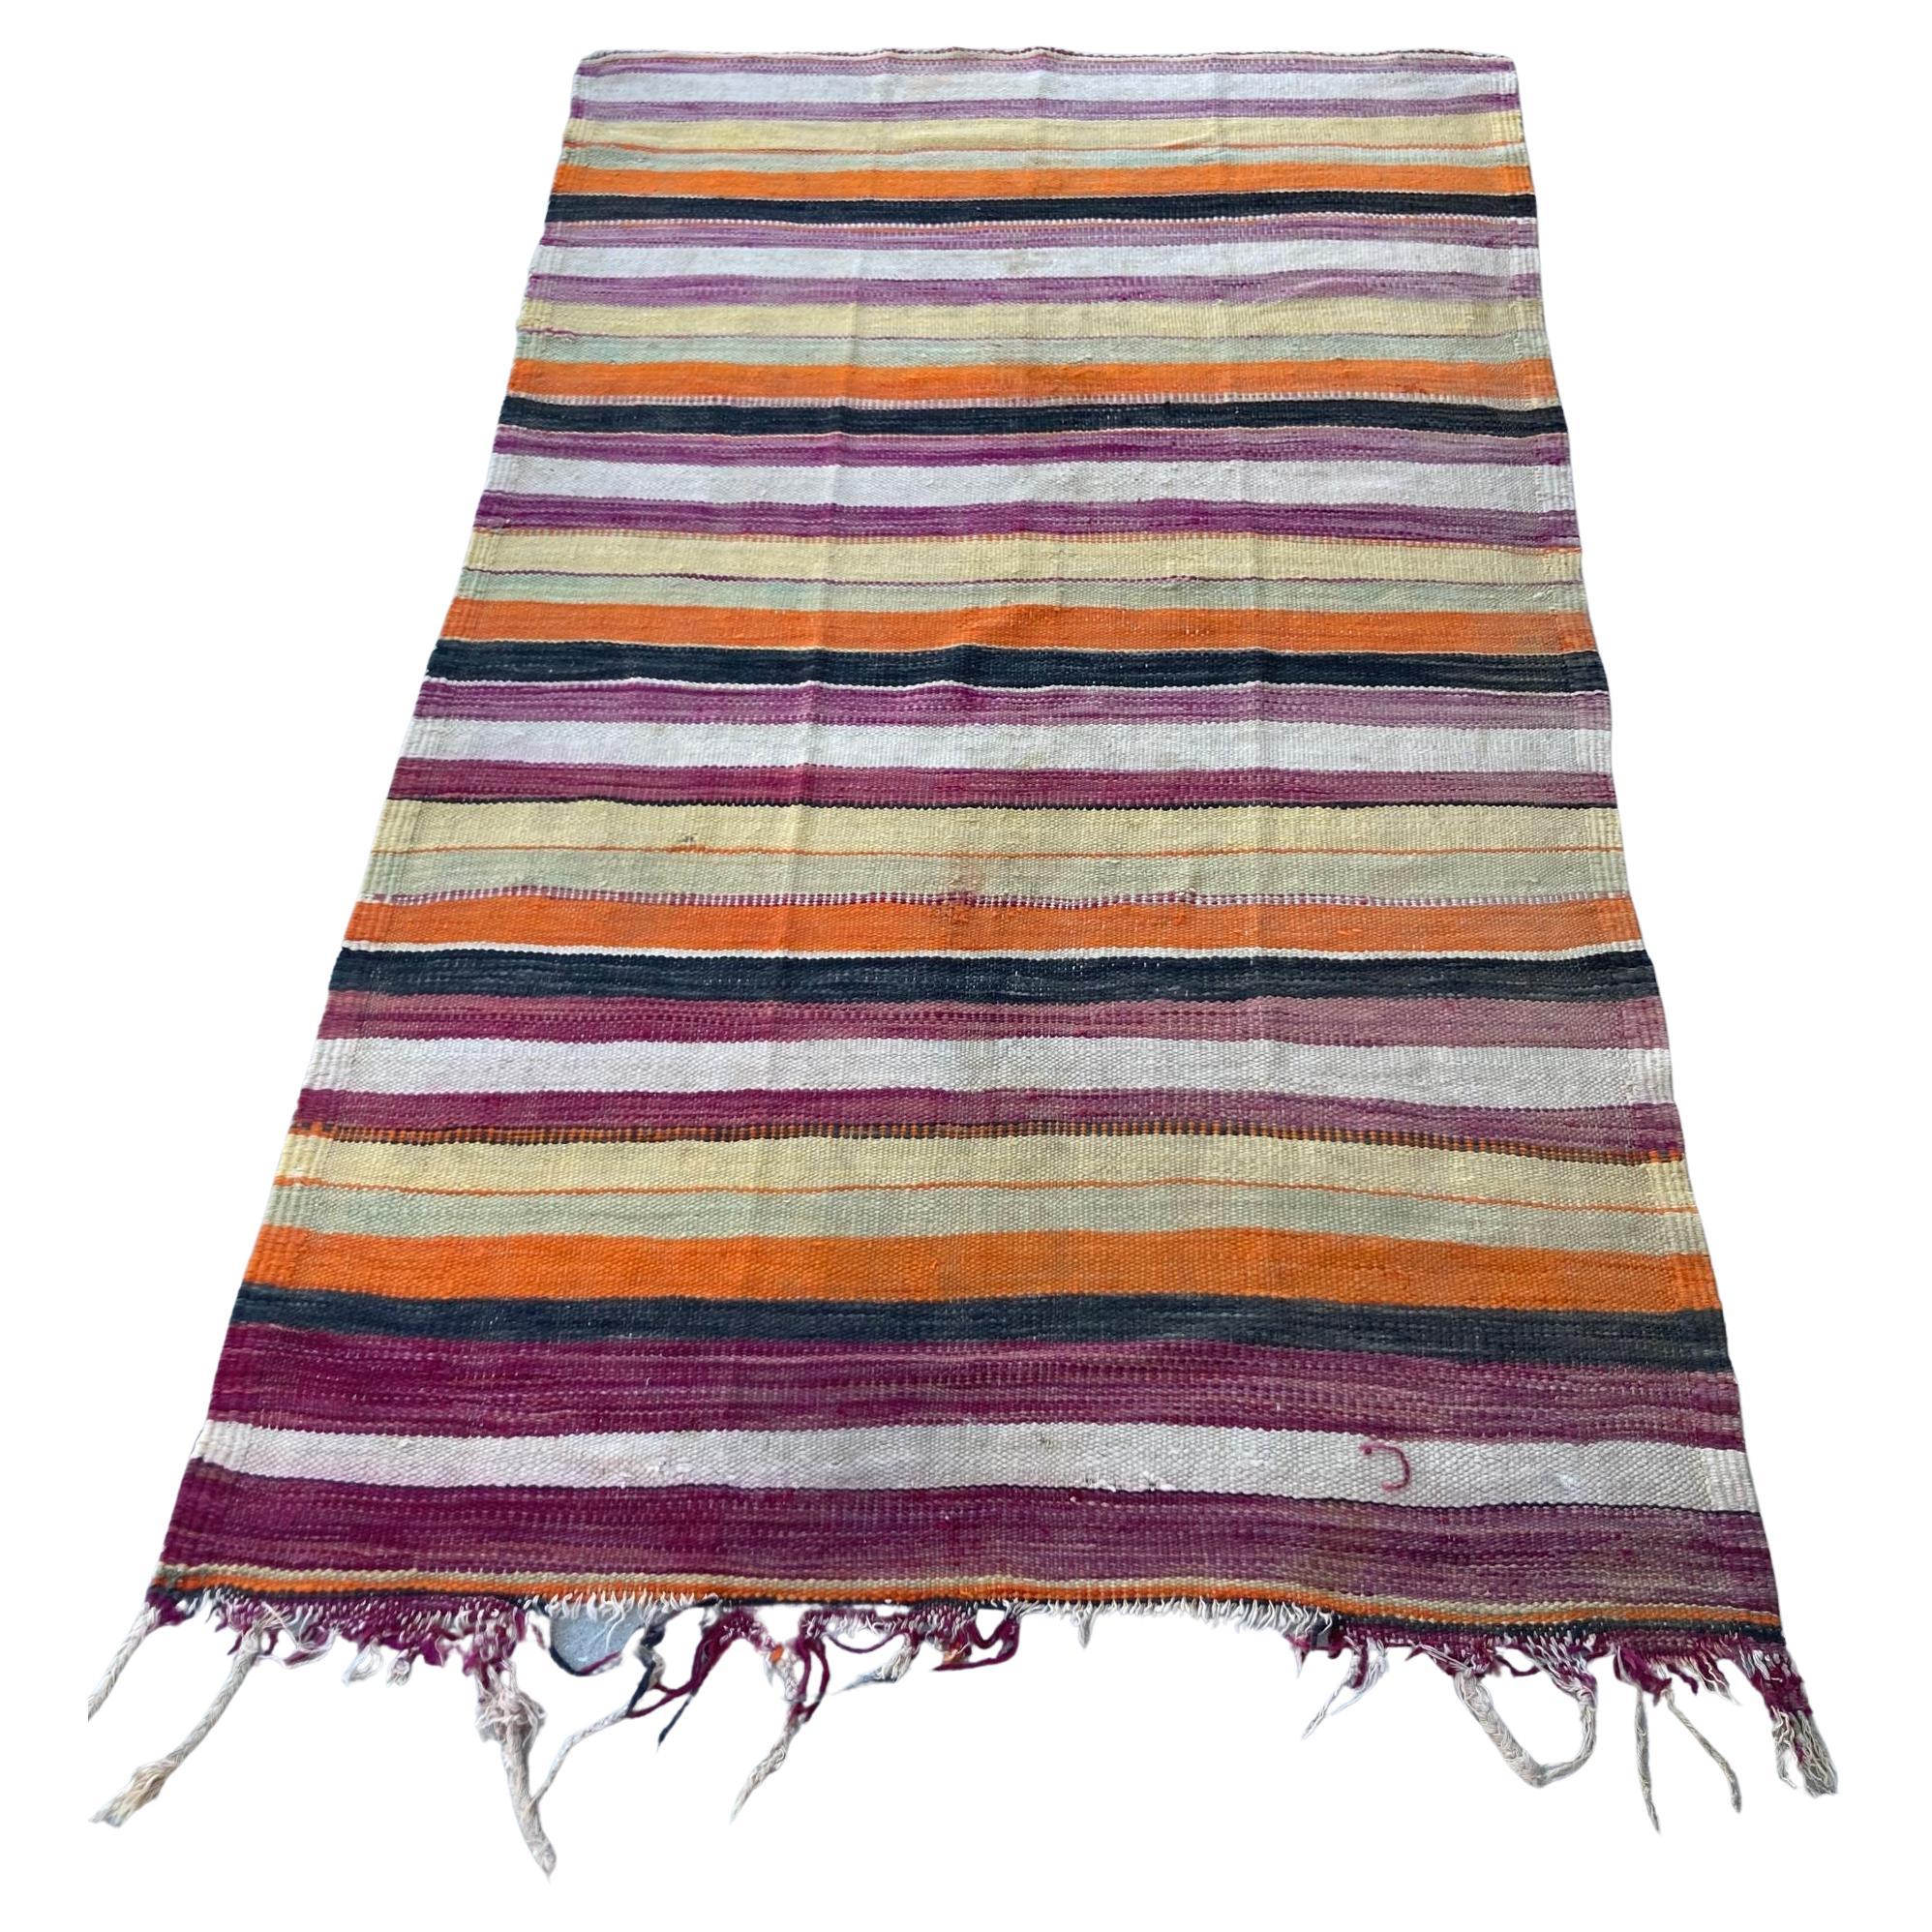 Tapis tribal marocain des années 1960 - Revêtement de sol en textile ethnique tissé à la main d'Afrique du Nord